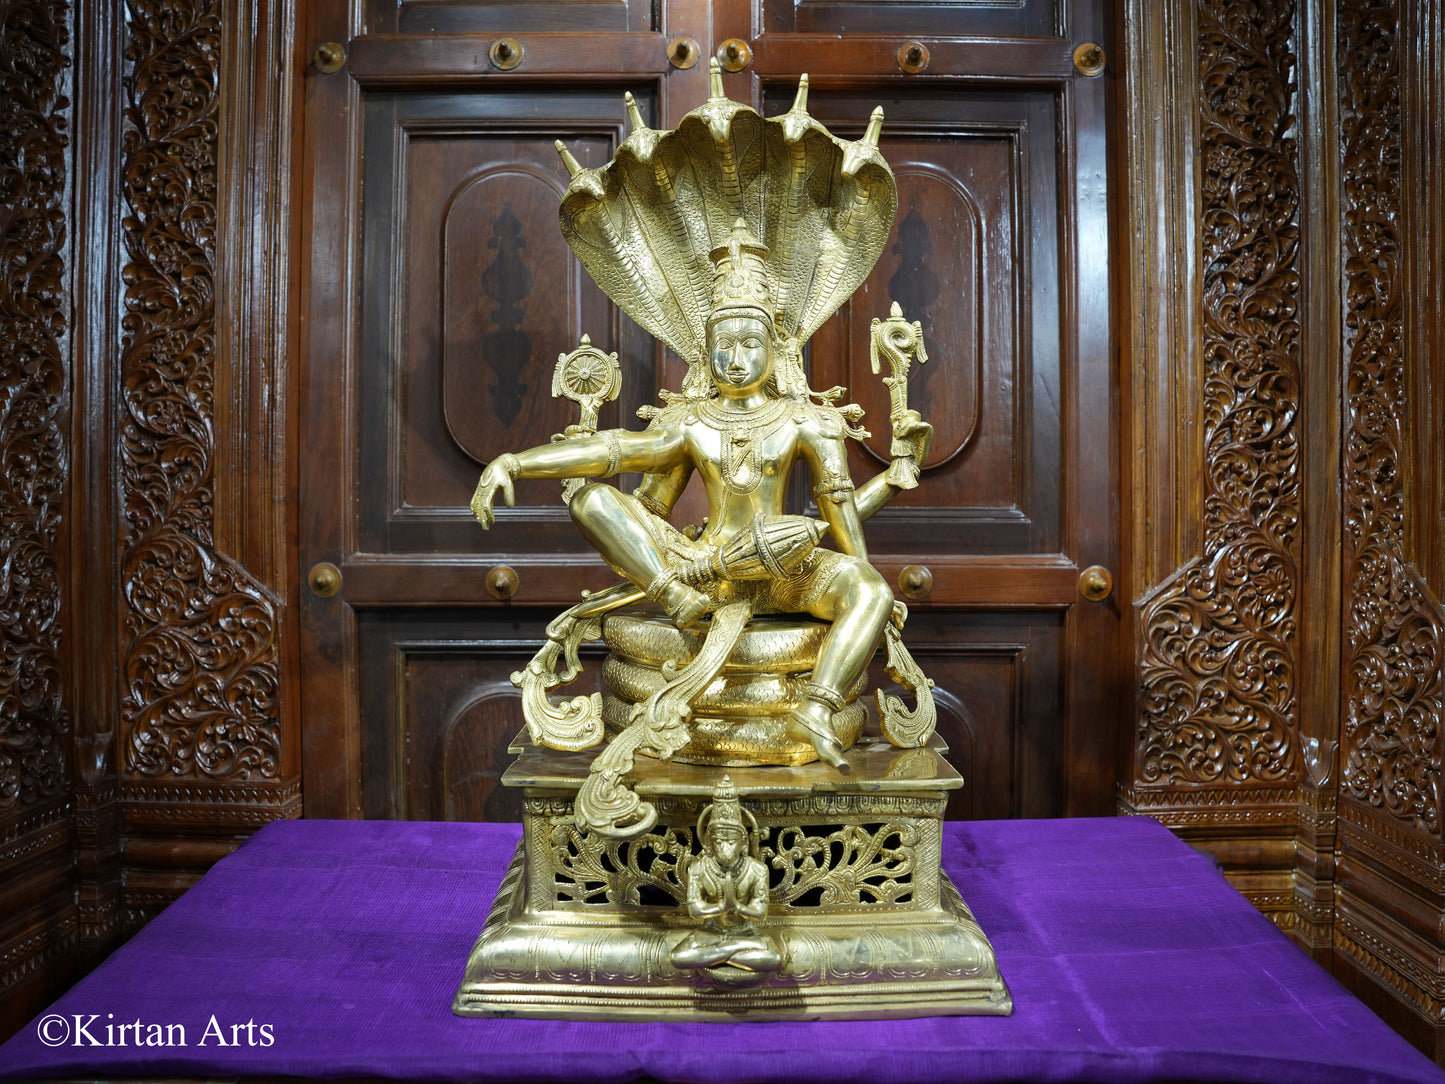 Lord Vishnu seated on SeshNag